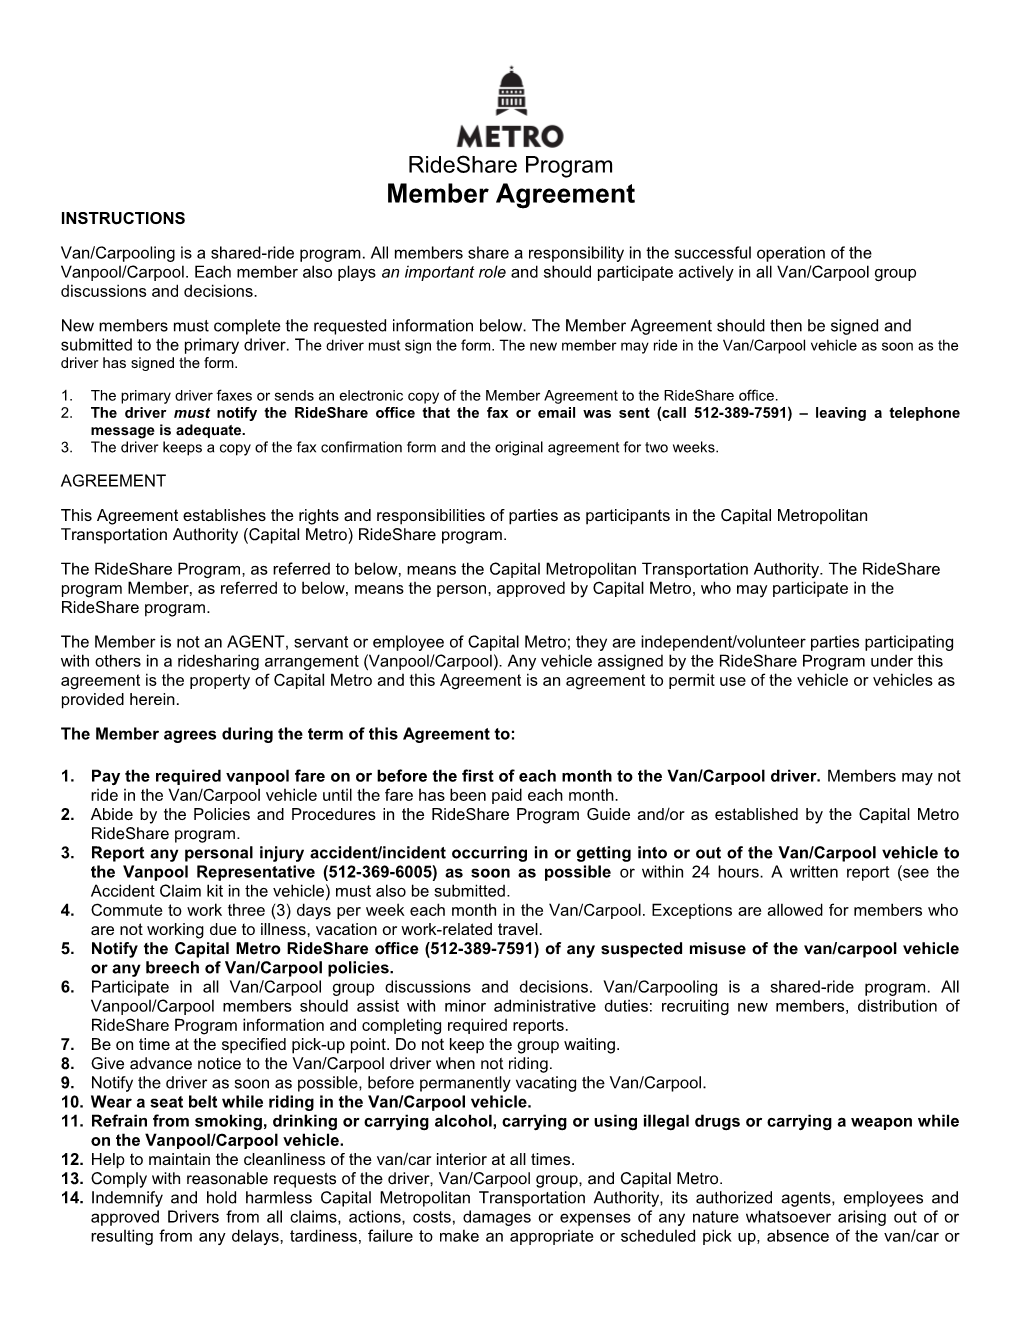 Member Agreement